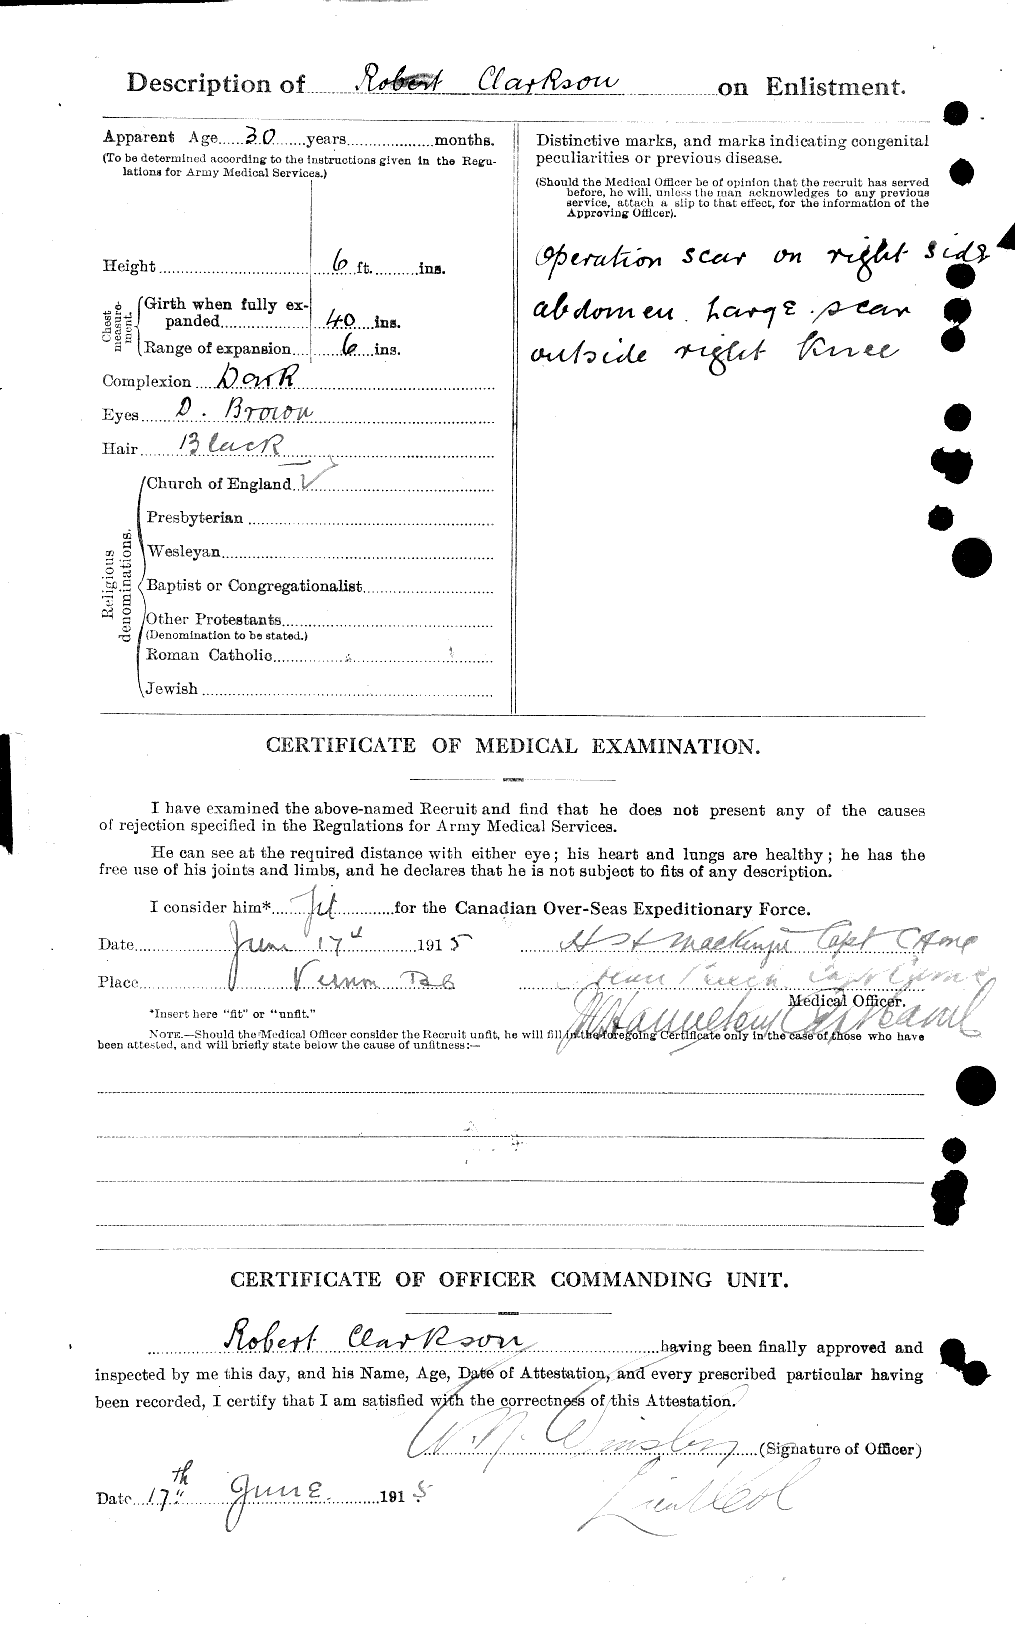 Dossiers du Personnel de la Première Guerre mondiale - CEC 019007b